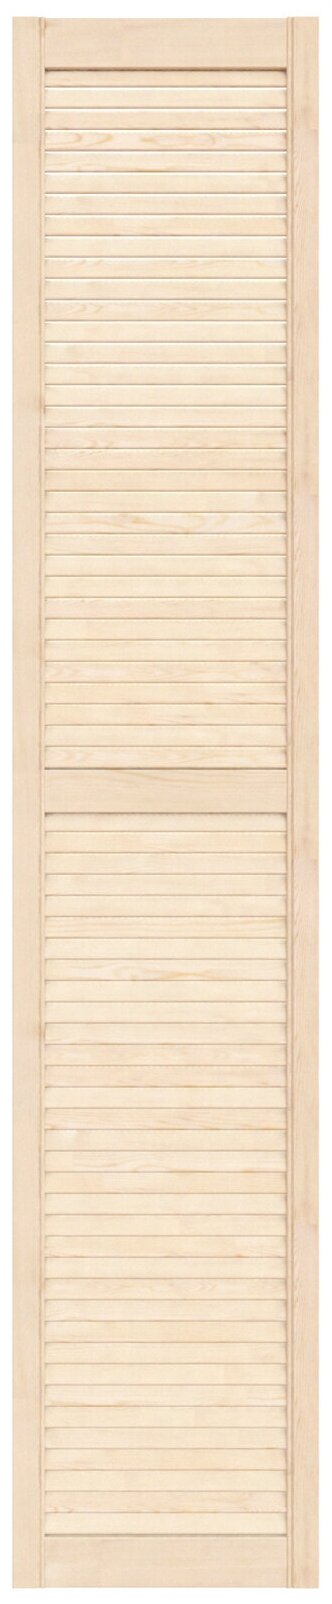 Дверь жалюзийная деревянная 394х2013мм сосна сорт Экстра